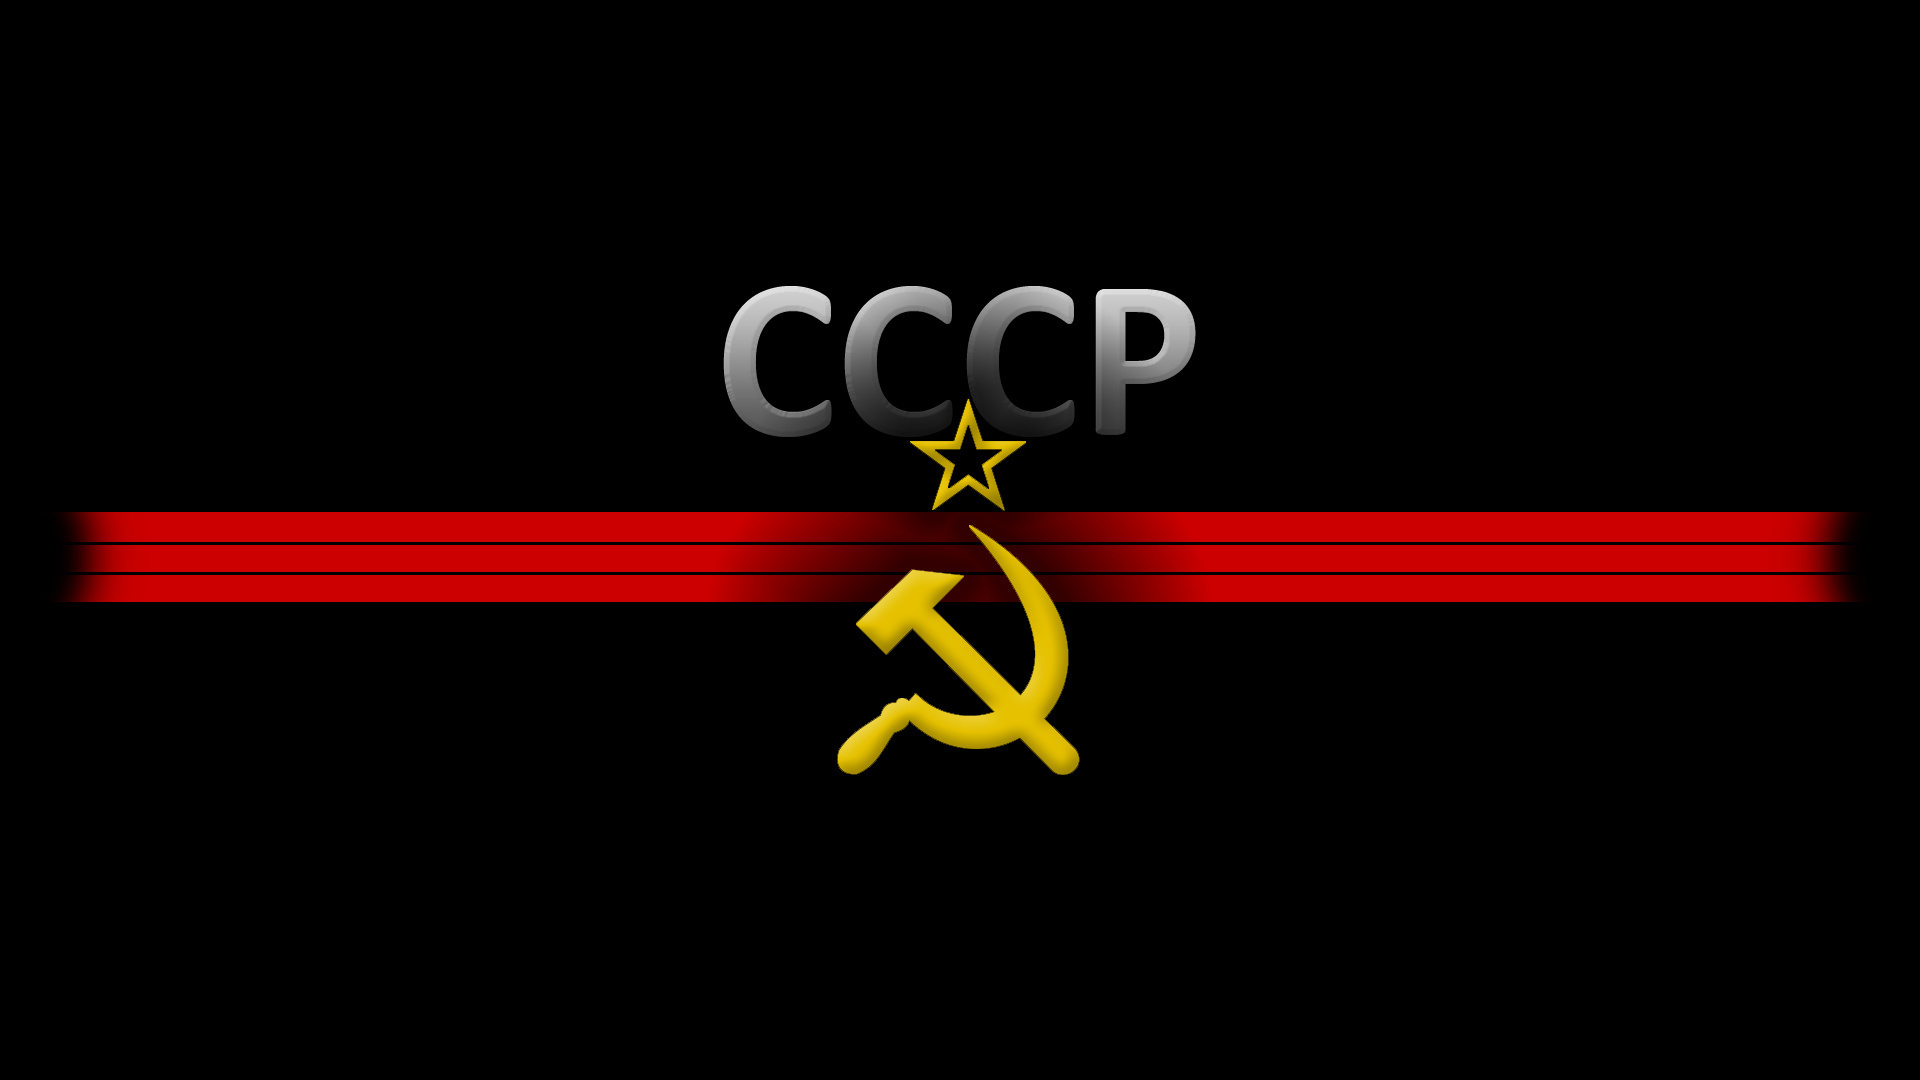 Soviet Union Flag Wallpaper For Hammer